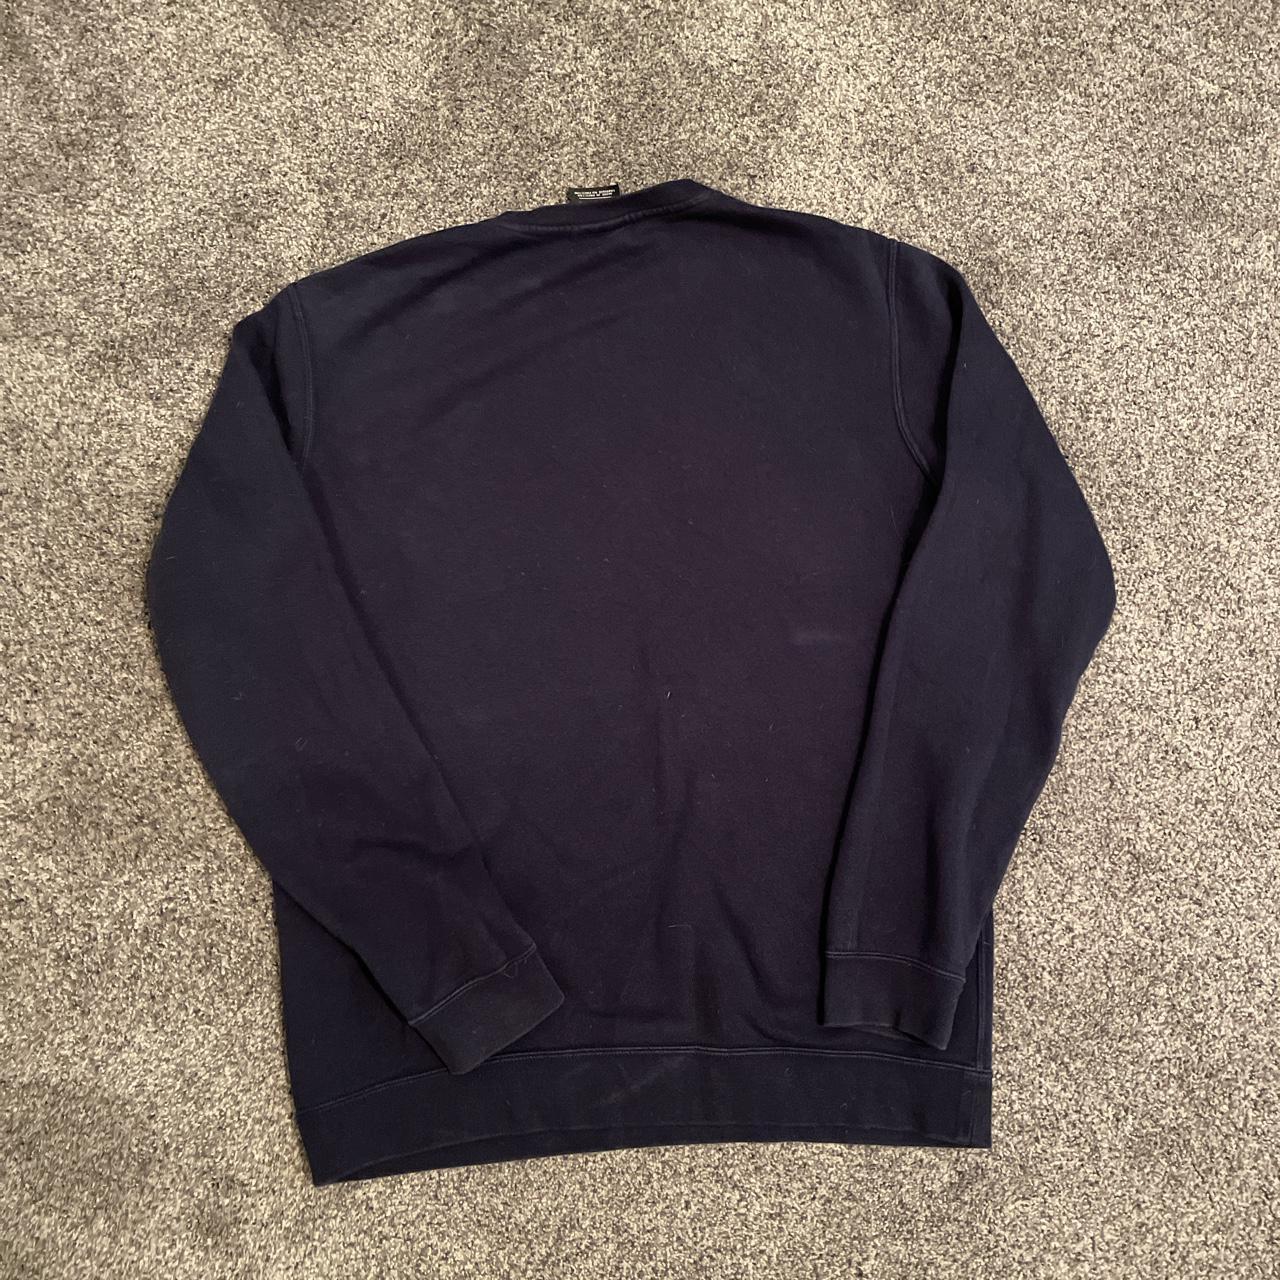 Product Image 2 - Nike Navy Blue Sweatshirt 

Size: